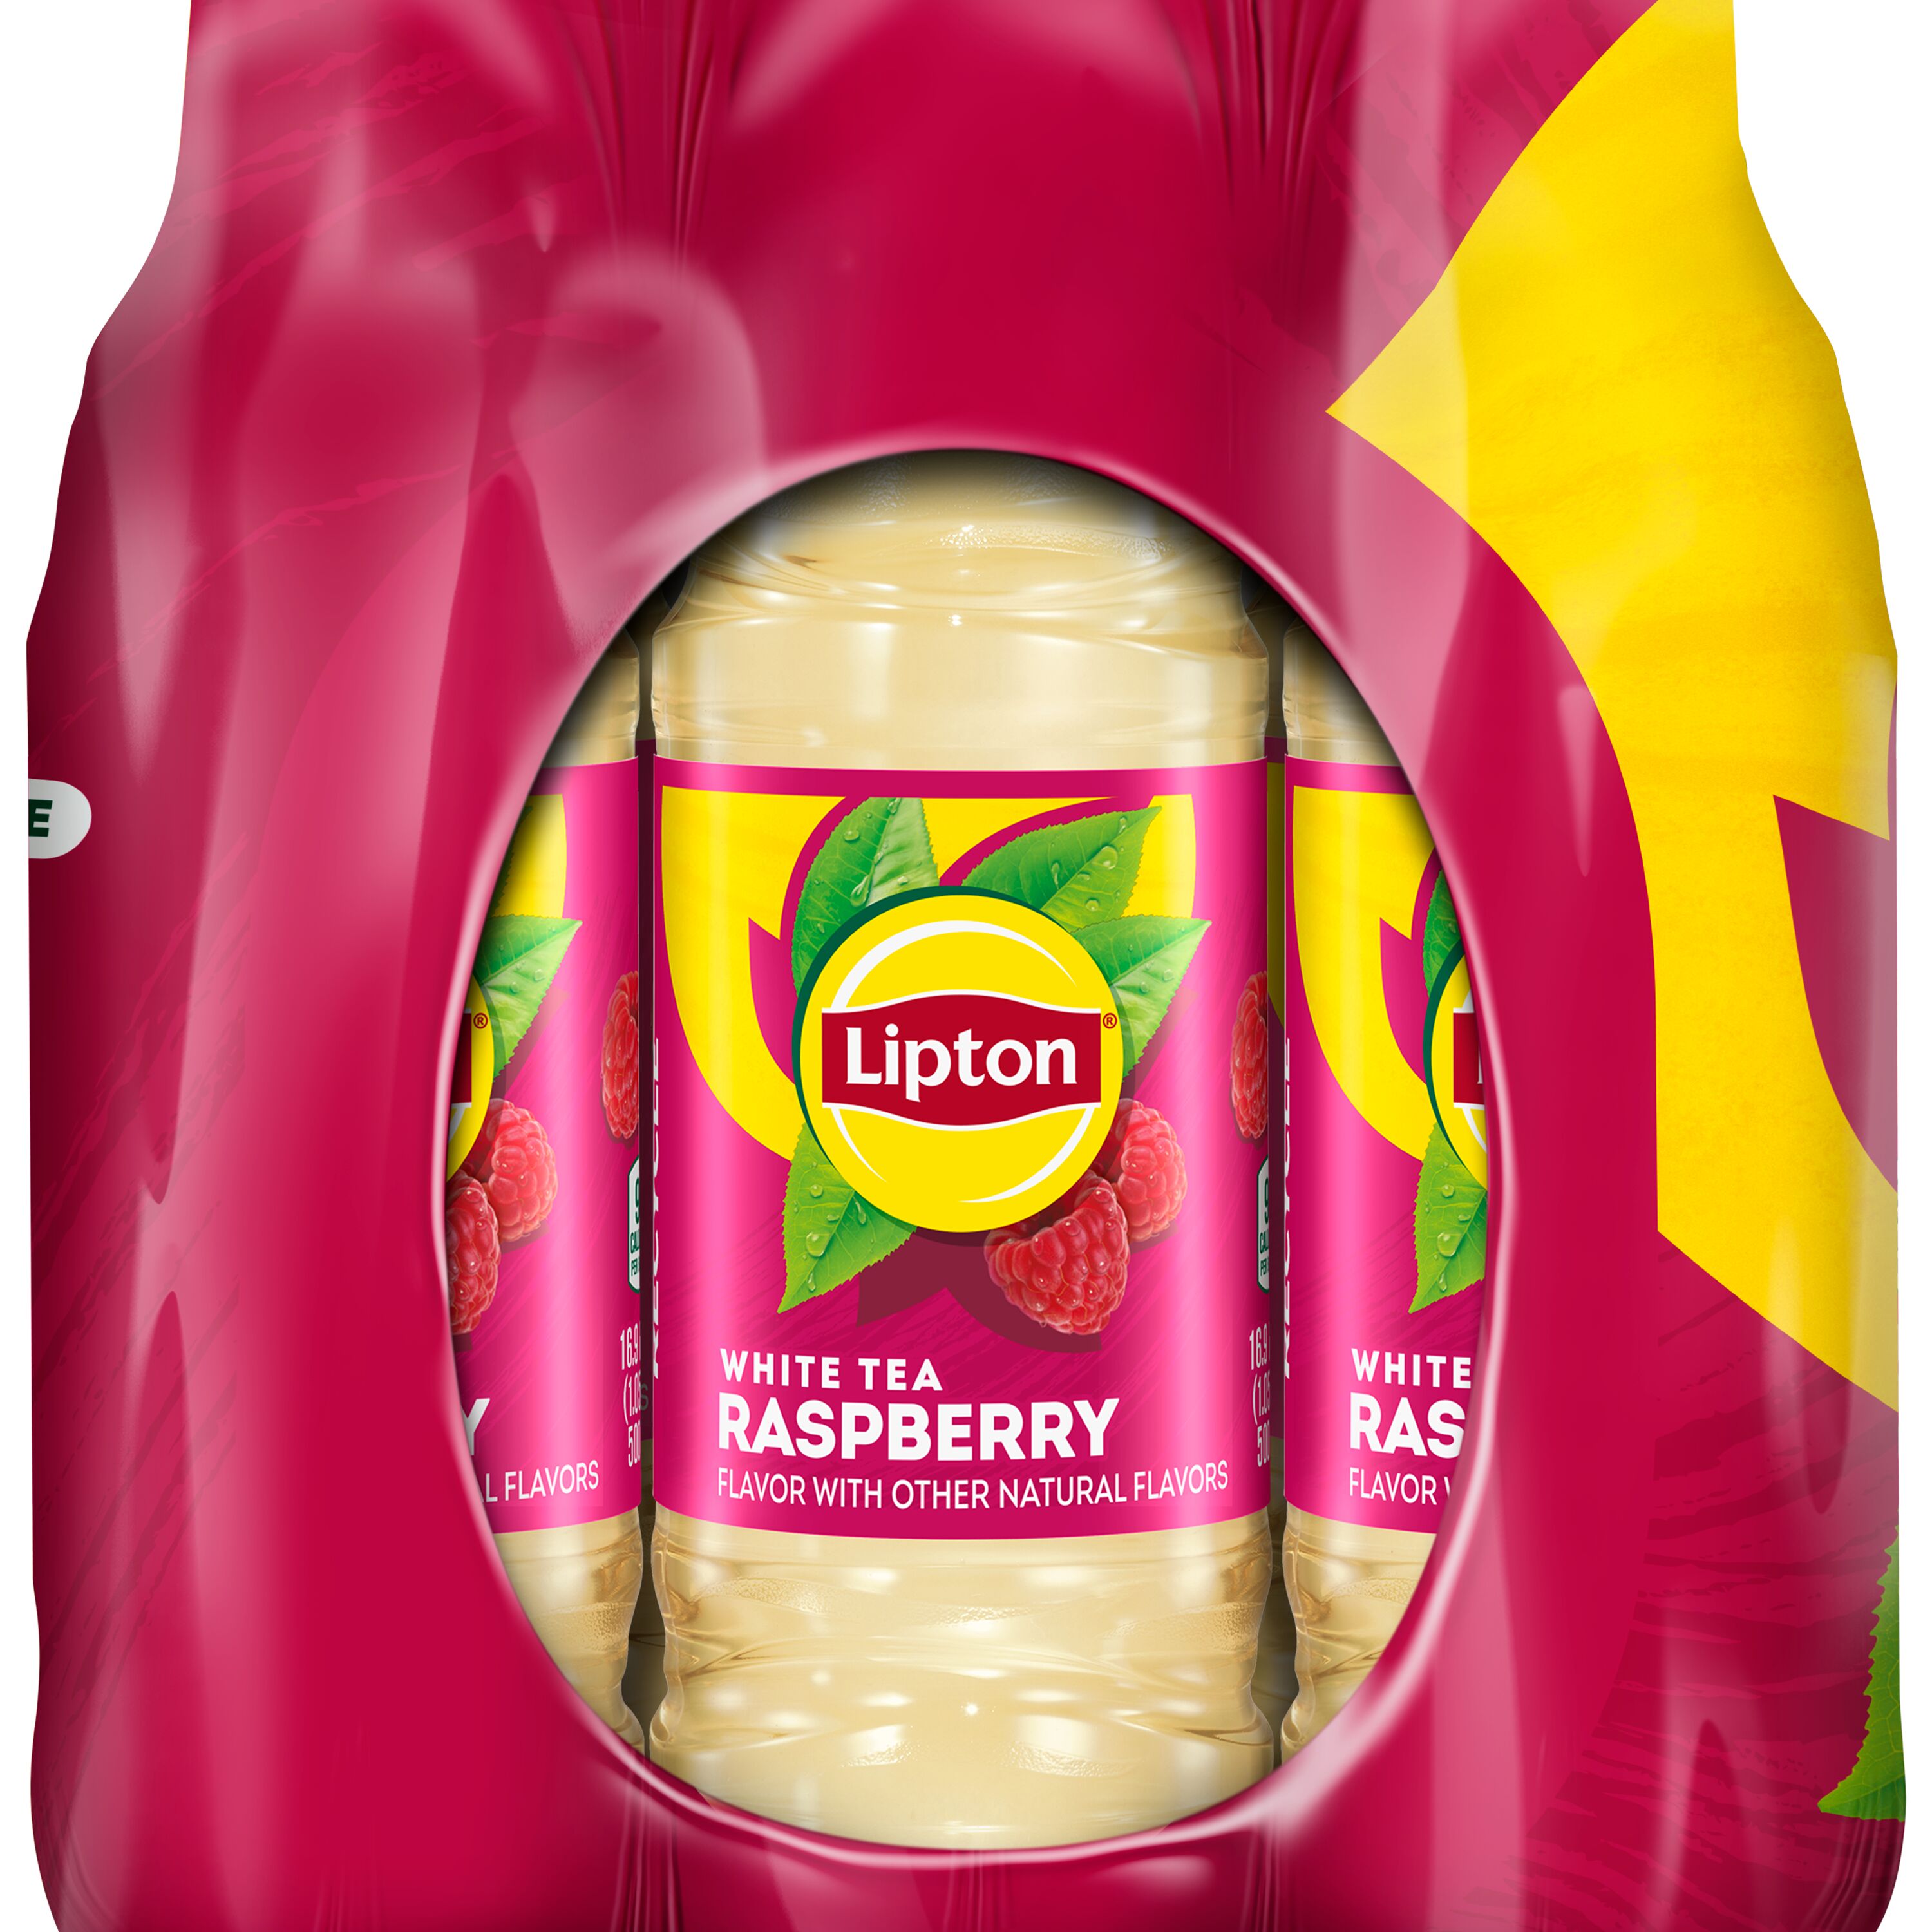 Lipton Raspberry White Tea Iced Tea, Bottled Tea Drink, 16.9 fl oz, 12 Pack Bottles - image 3 of 6